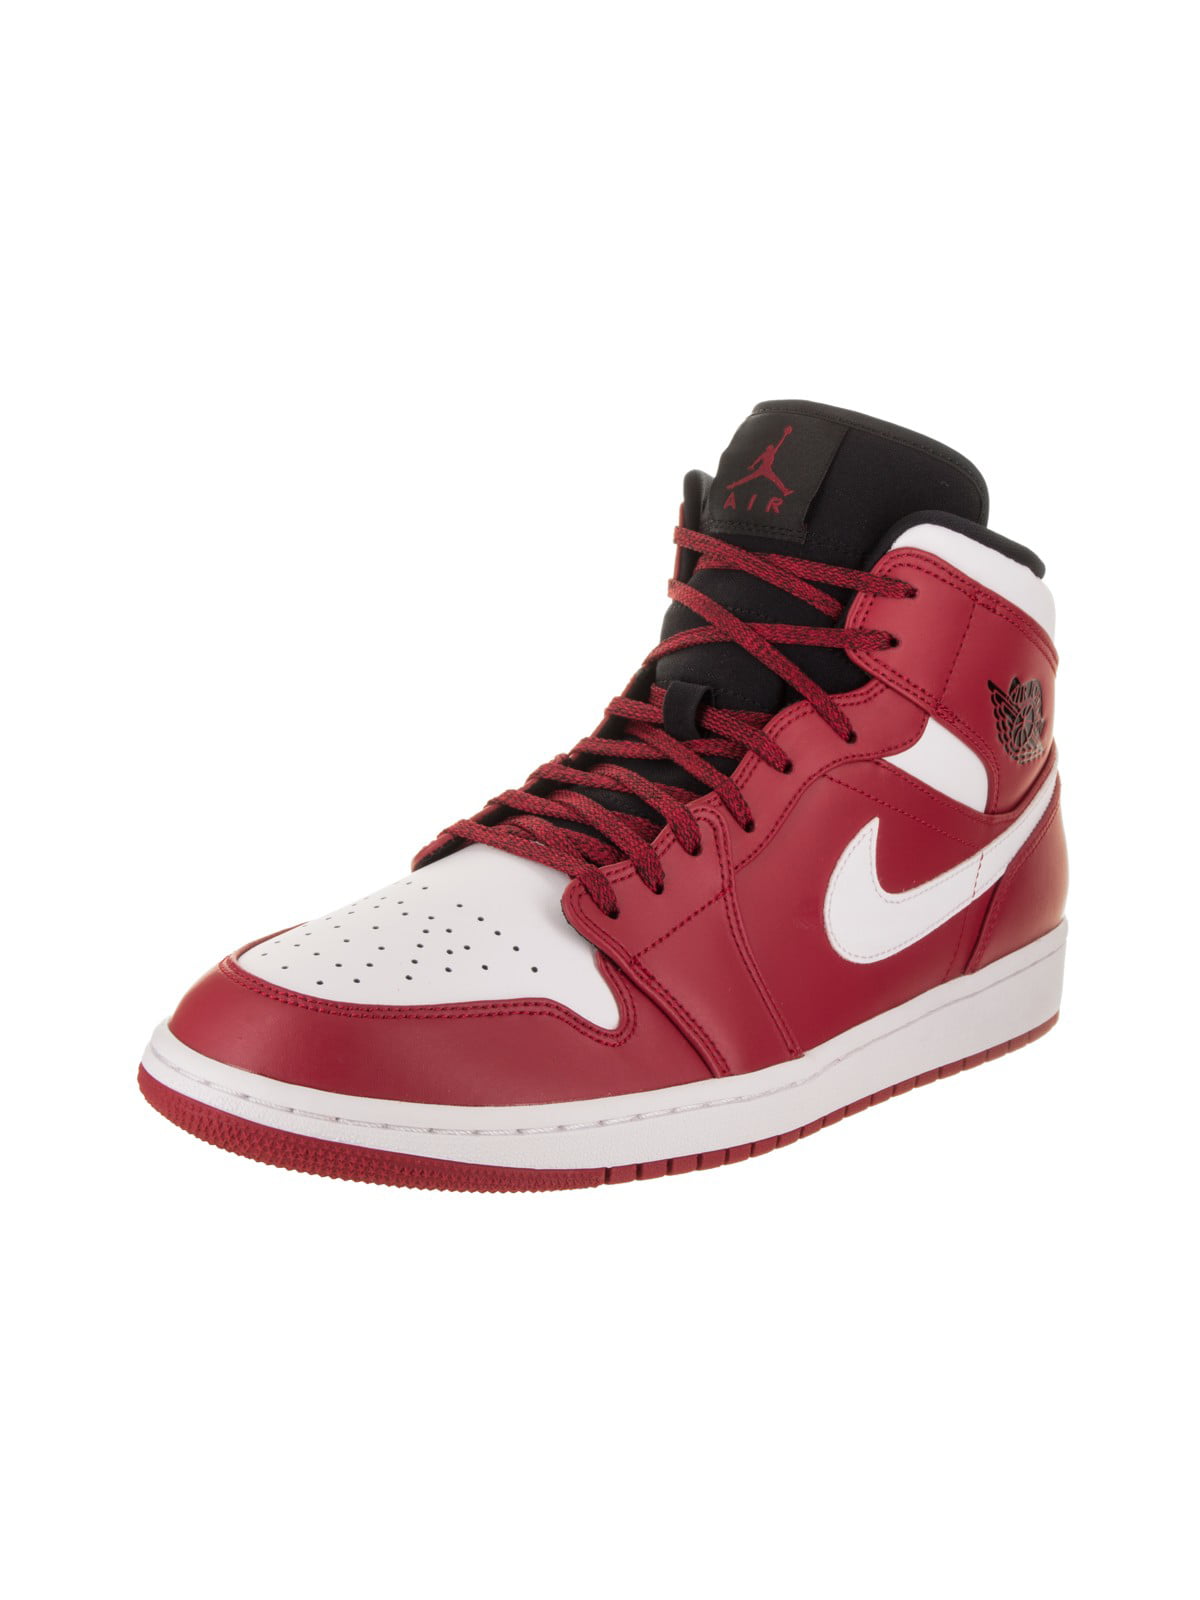 Nike Jordan Men's Air Jordan 1 Mid Basketball Shoe - Walmart.com